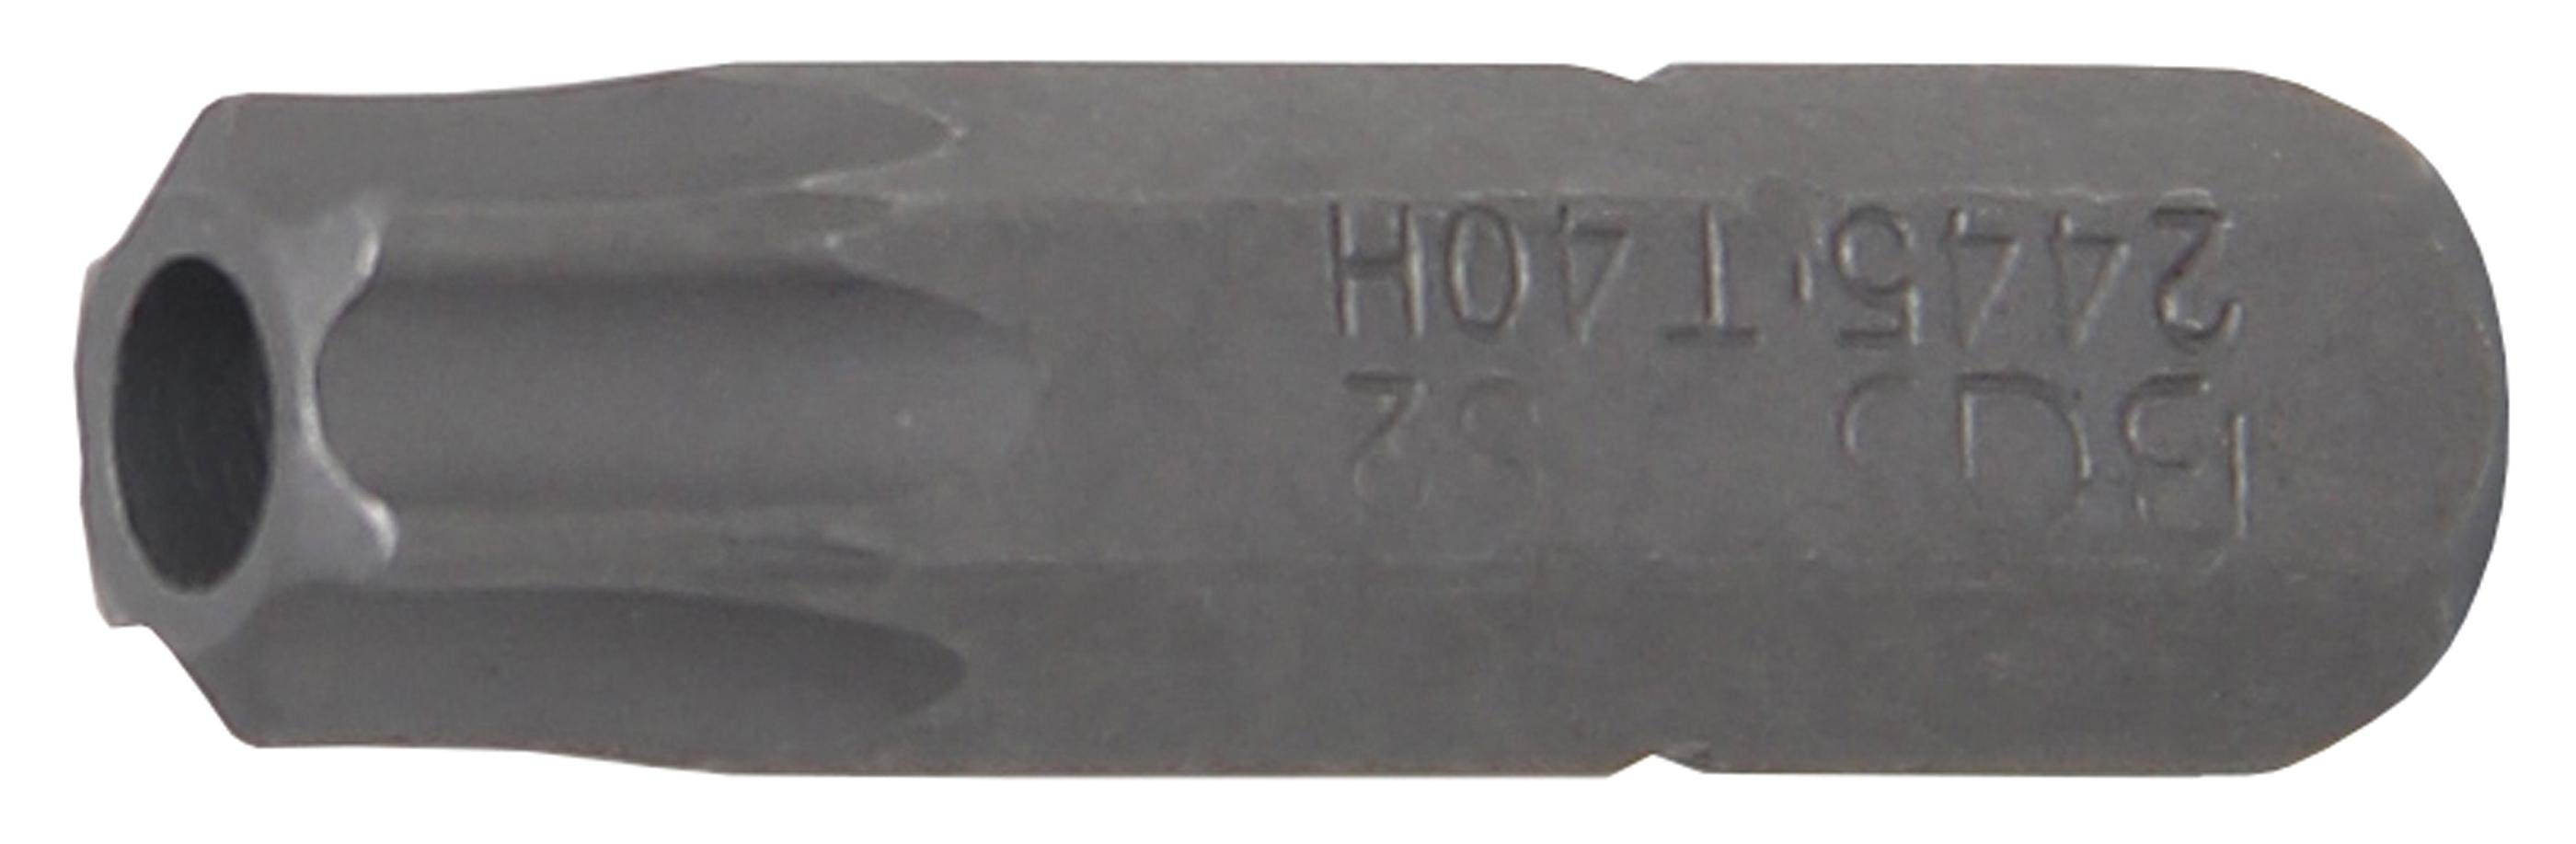 BGS technic Bit-Schraubendreher Bit, Antrieb Außensechskant 6,3 mm (1/4), T-Profil (für Torx) mit Bohrung T40